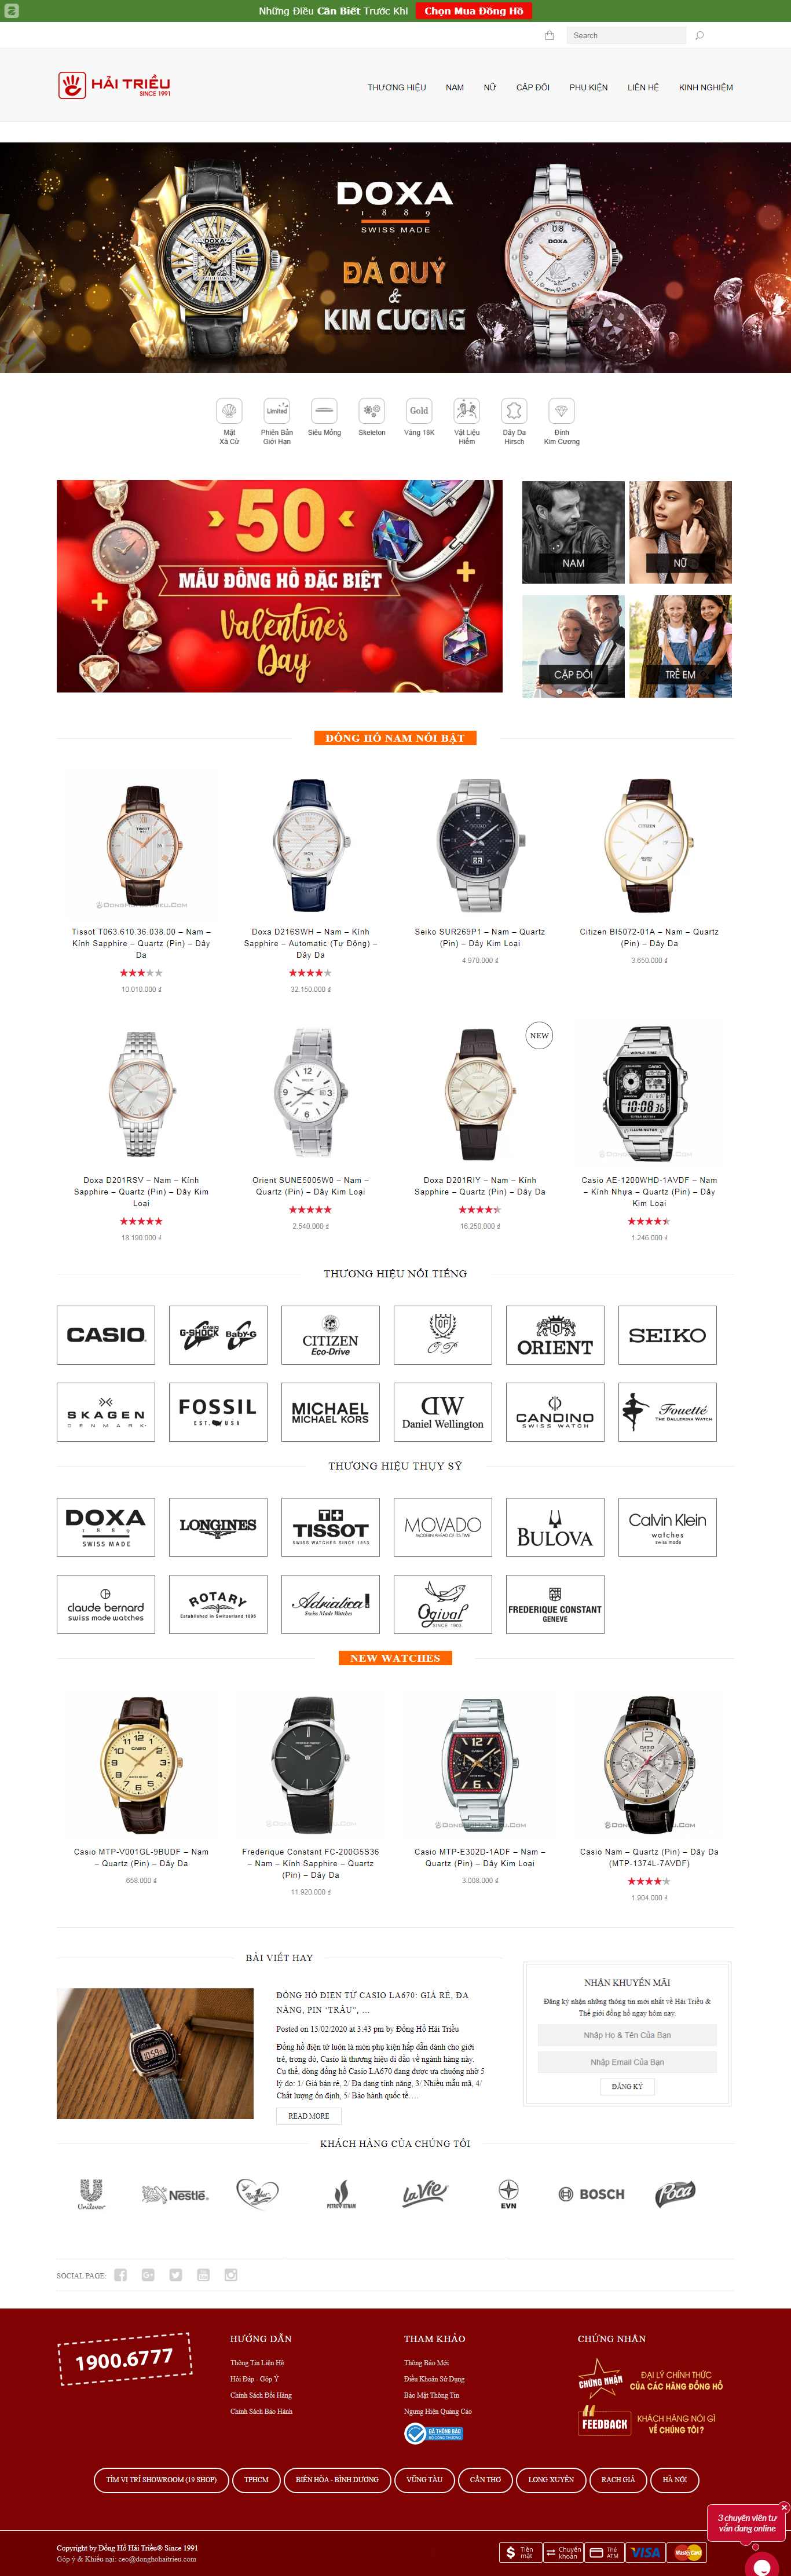 Thiết kế Website shop đồng hồ - donghohaitrieu.com